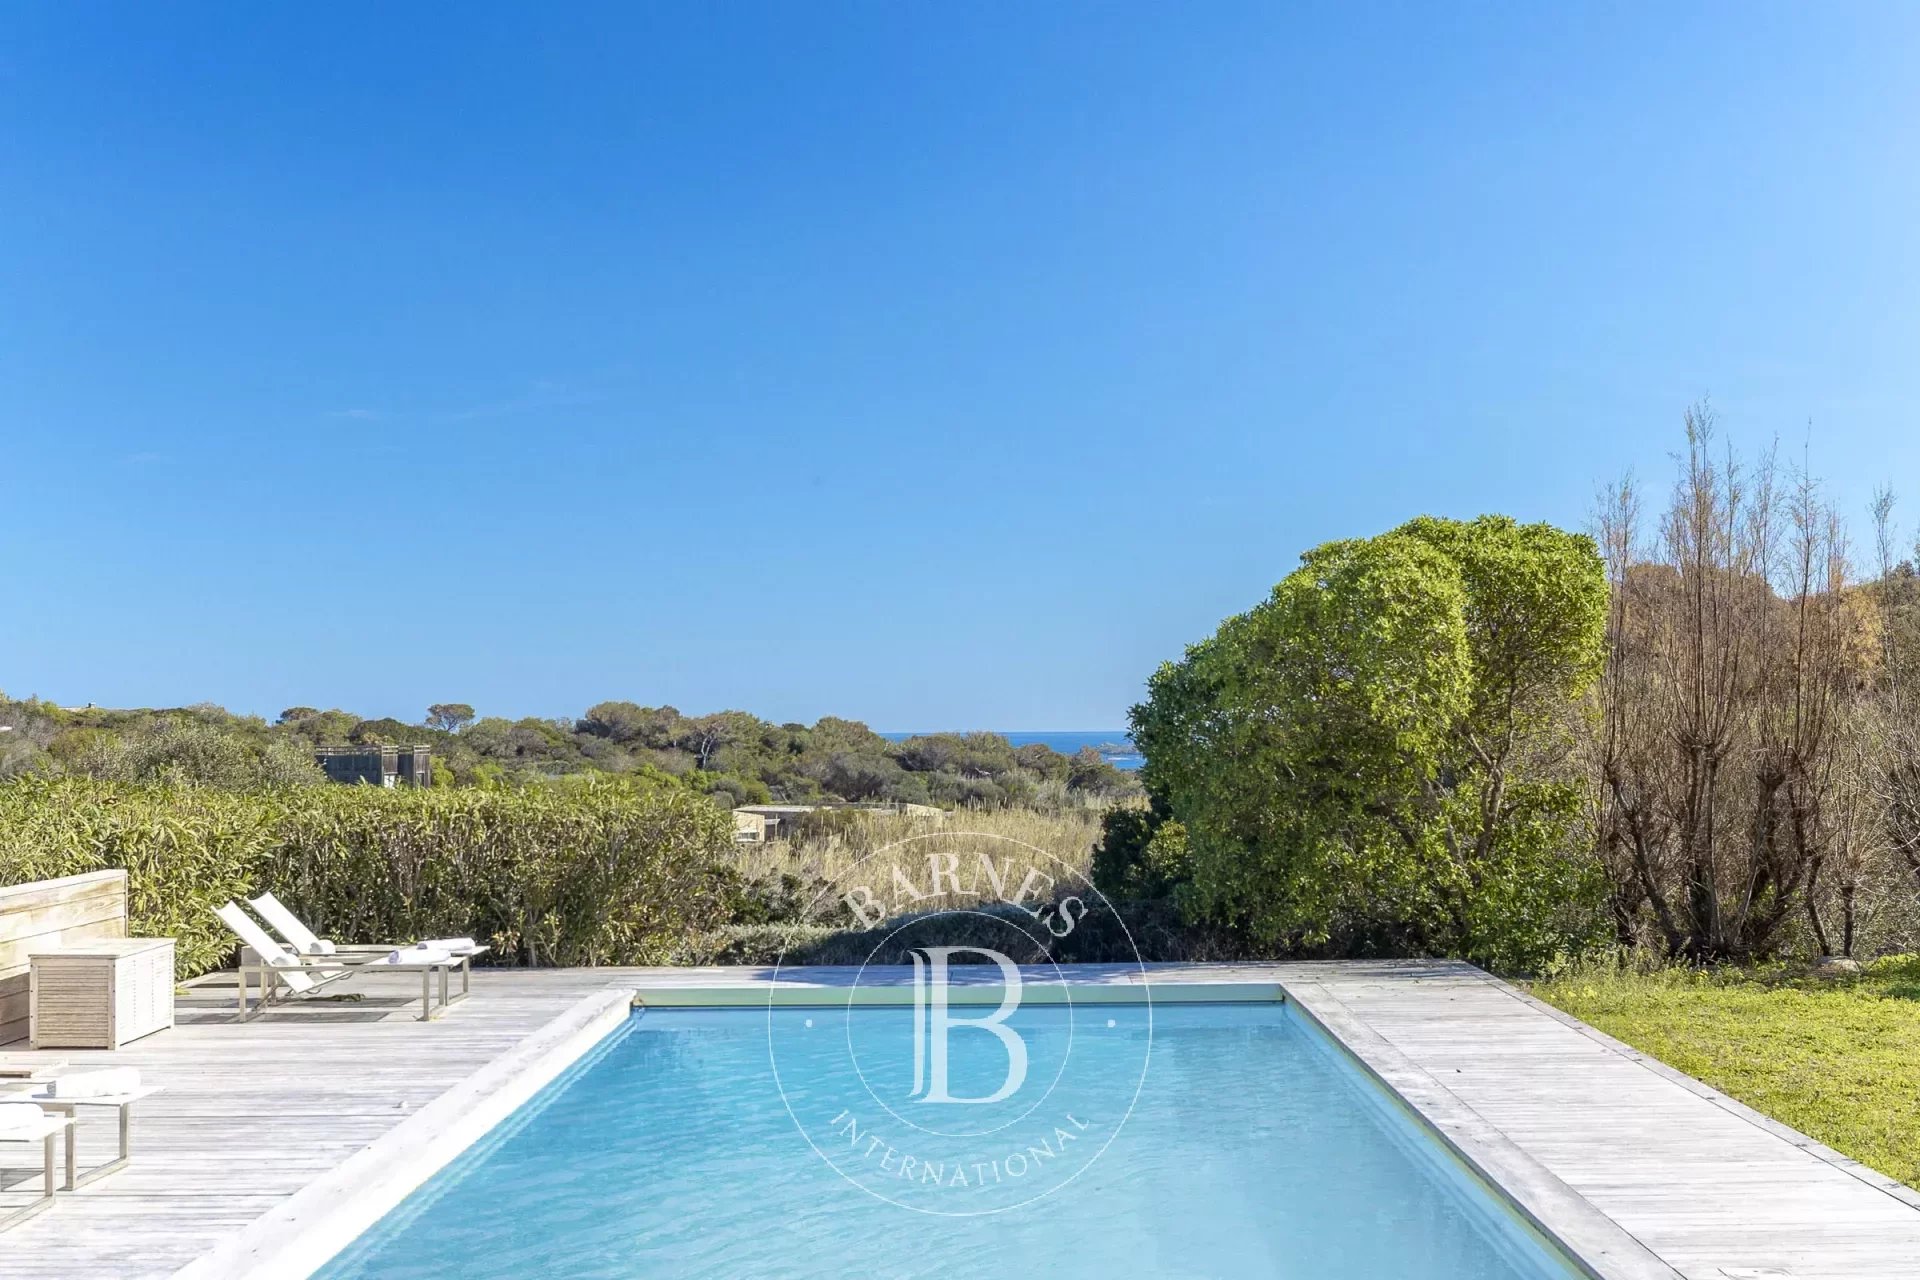 Exclusivité - Bonifacio, Sperone, Villa en pierres, 5 chambres, vue mer, proche plage, proche de Sperone